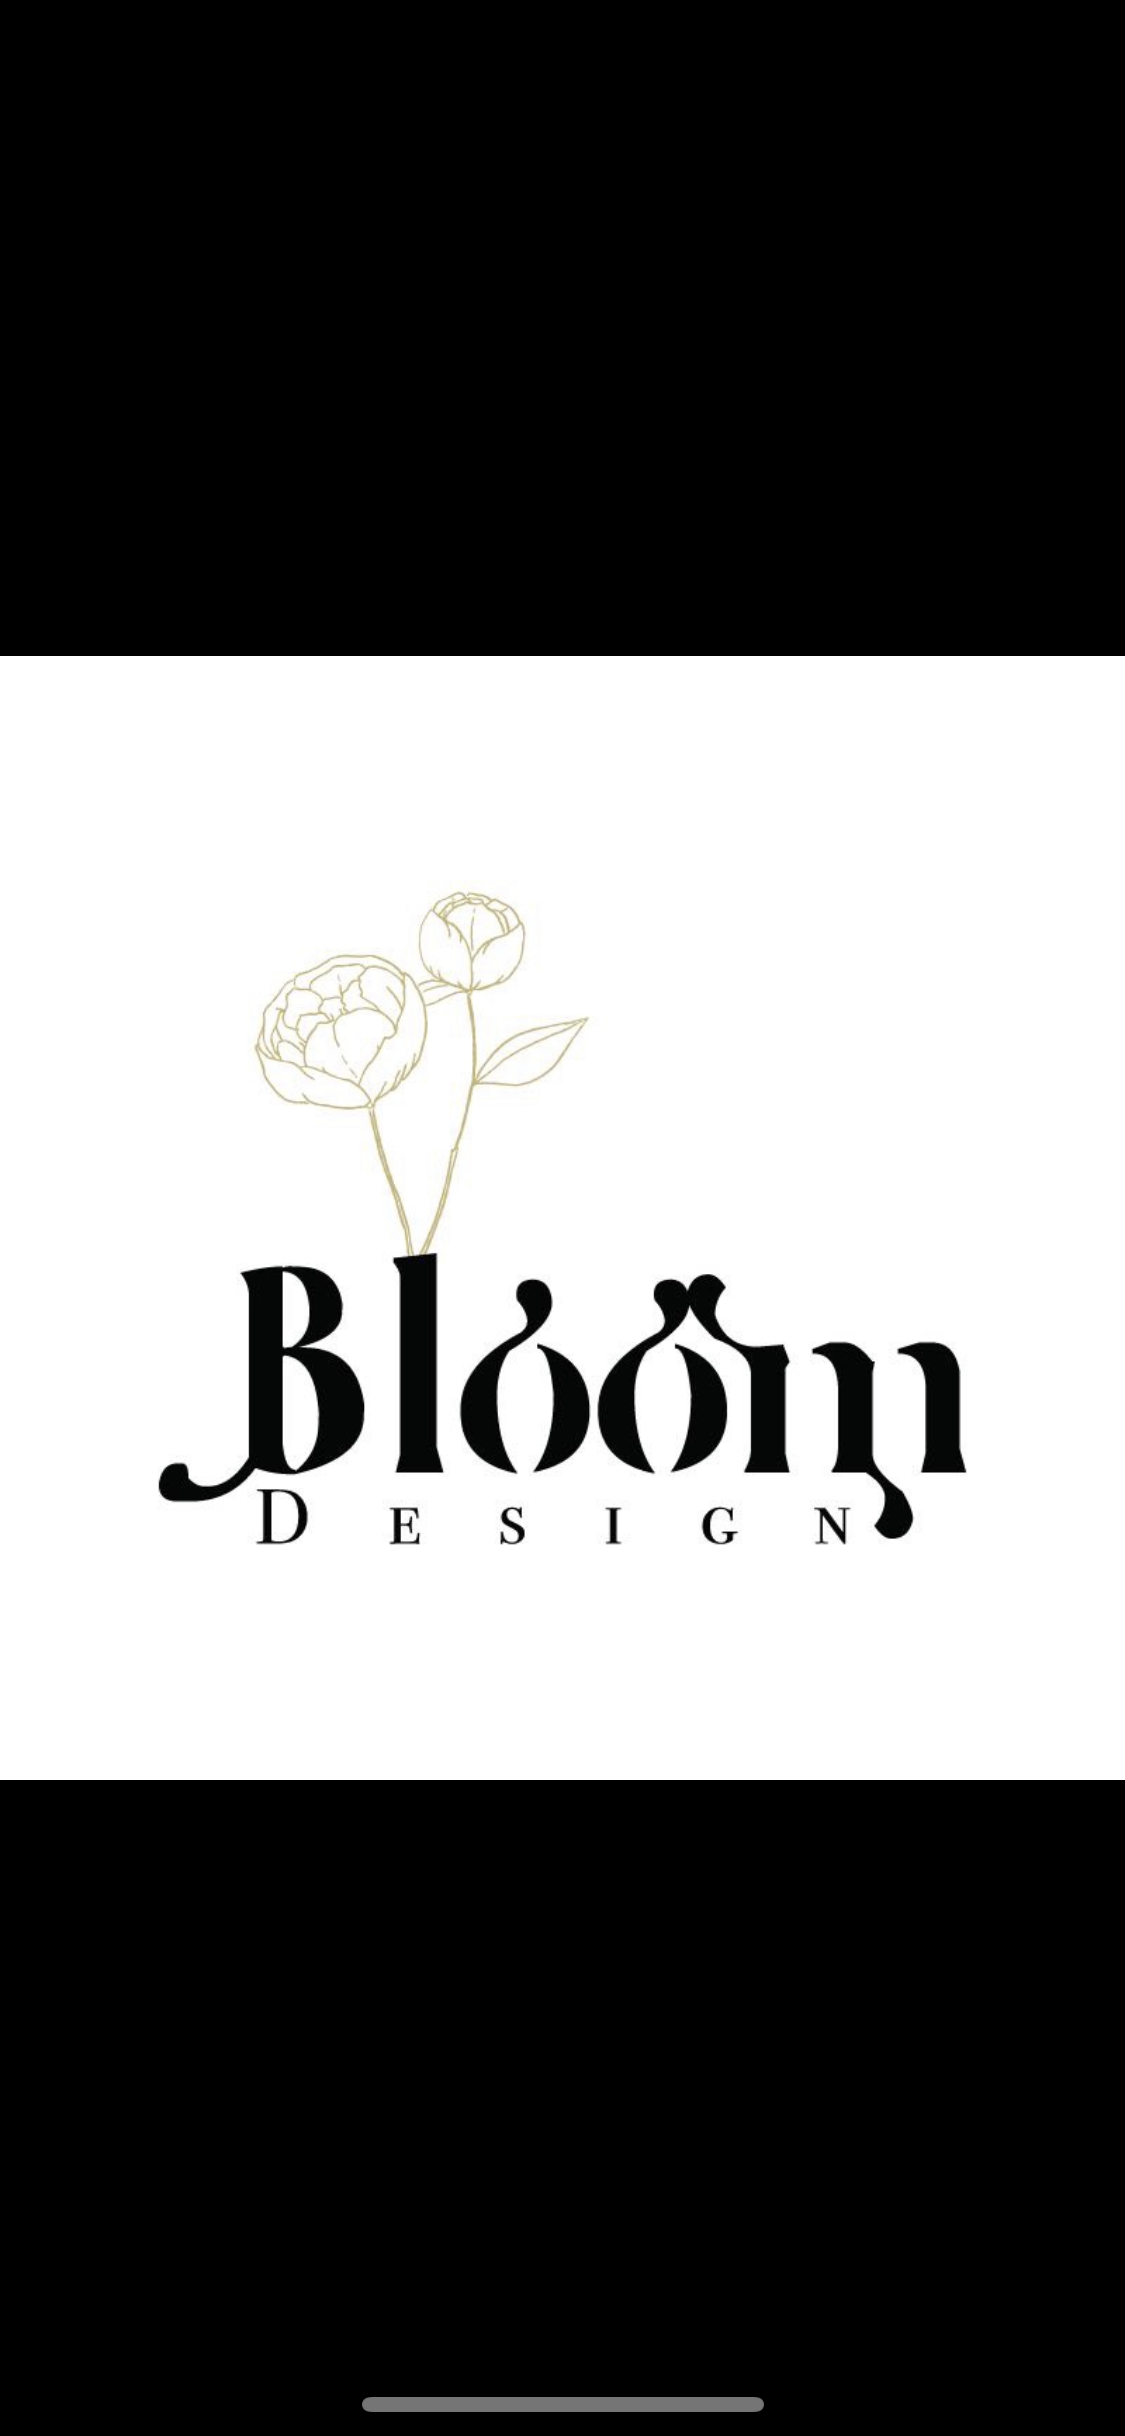 Bloom design